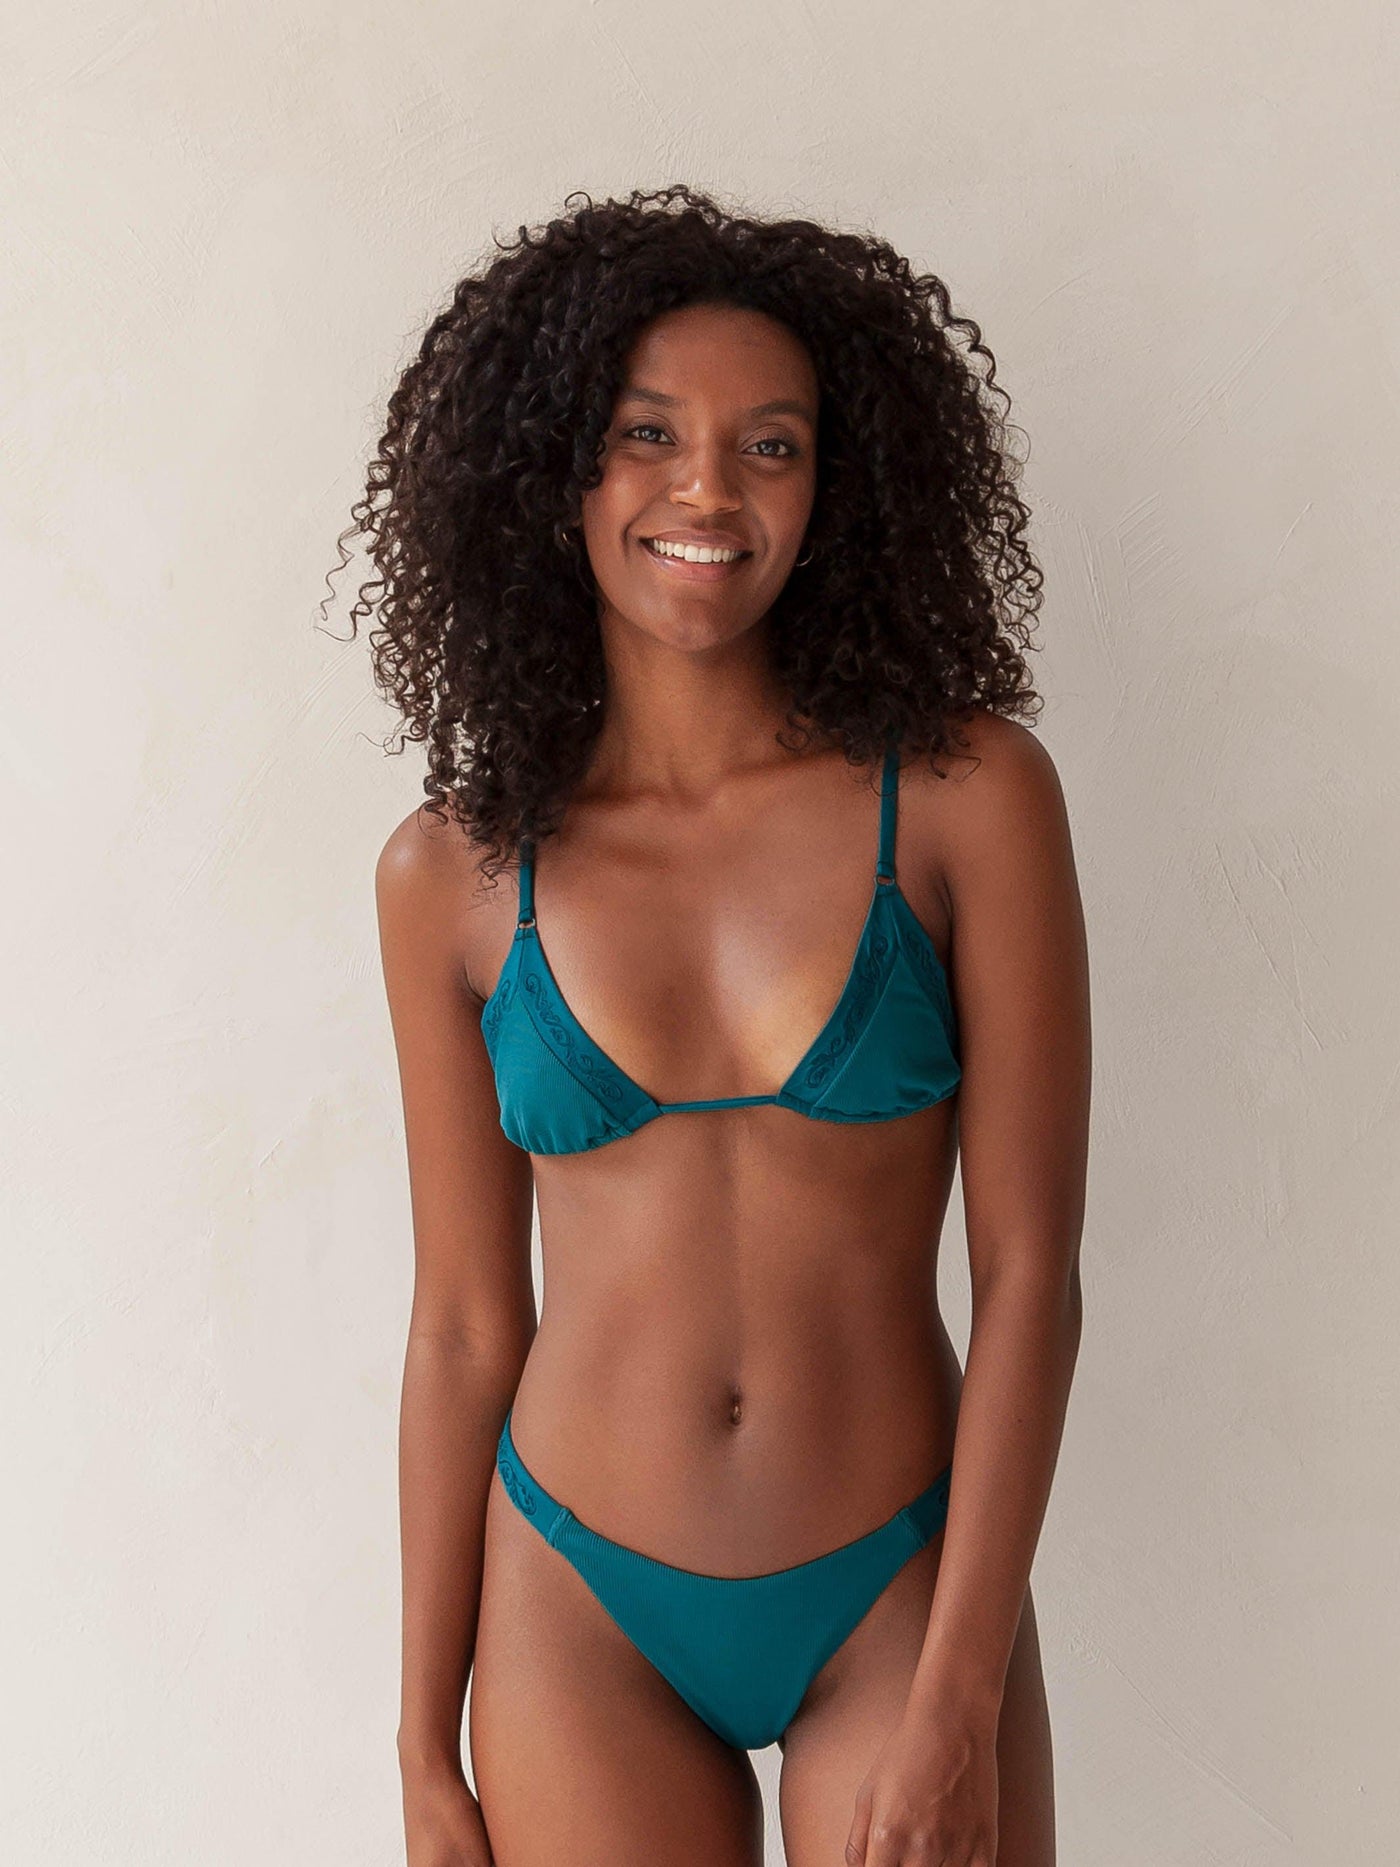 Bikini top triangle and brazilian tanga bottom in green with rib fabric and embroidery, woman front